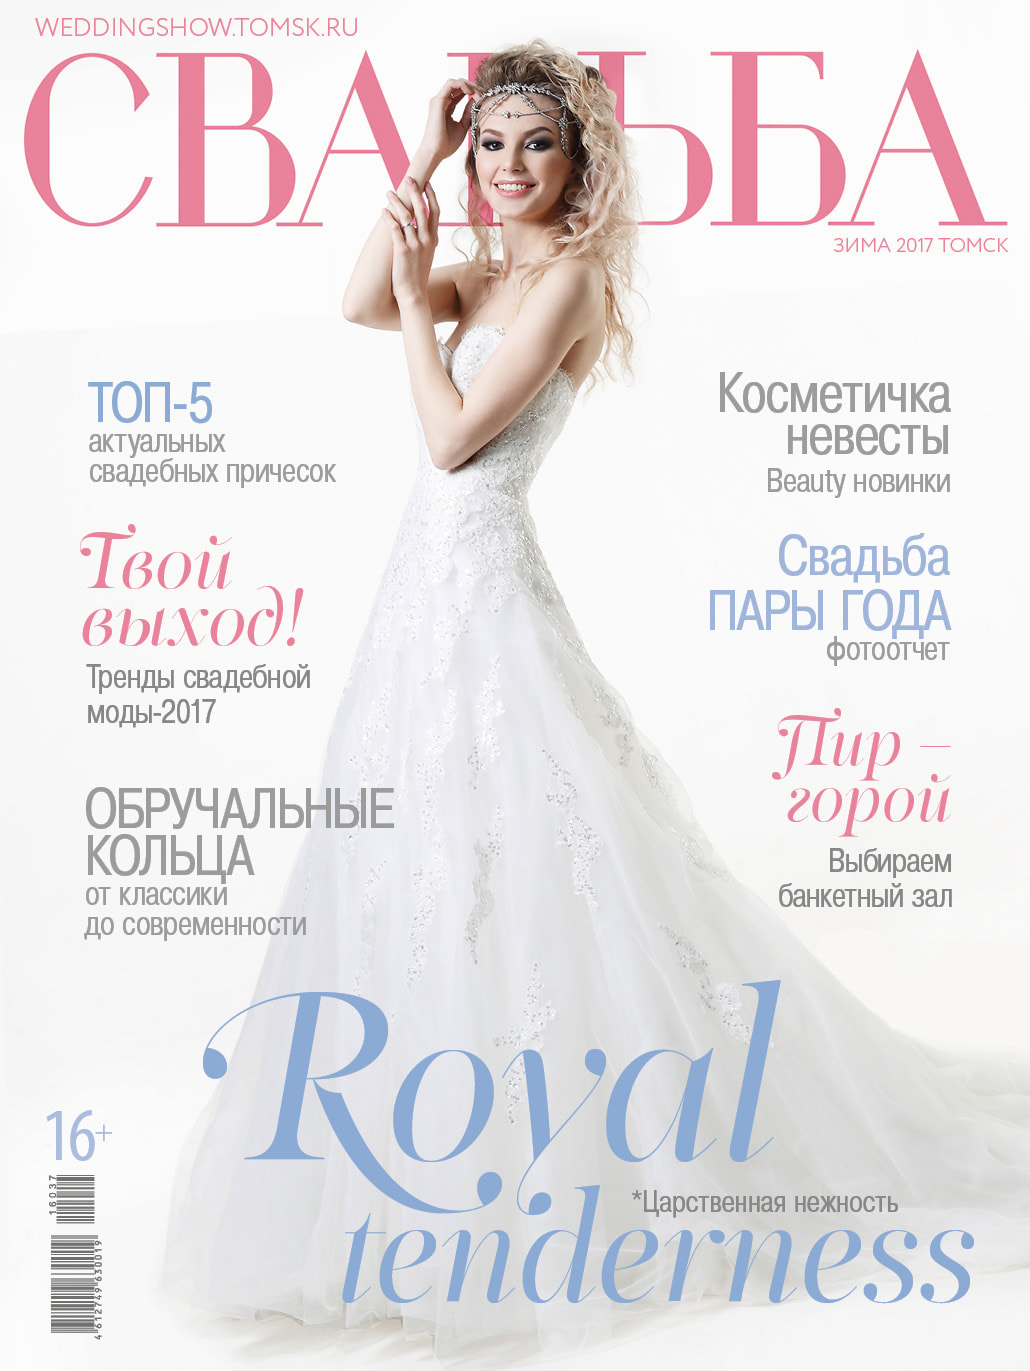 Обложка журнала Свадьба Royal tenderness (Царственная нежность)